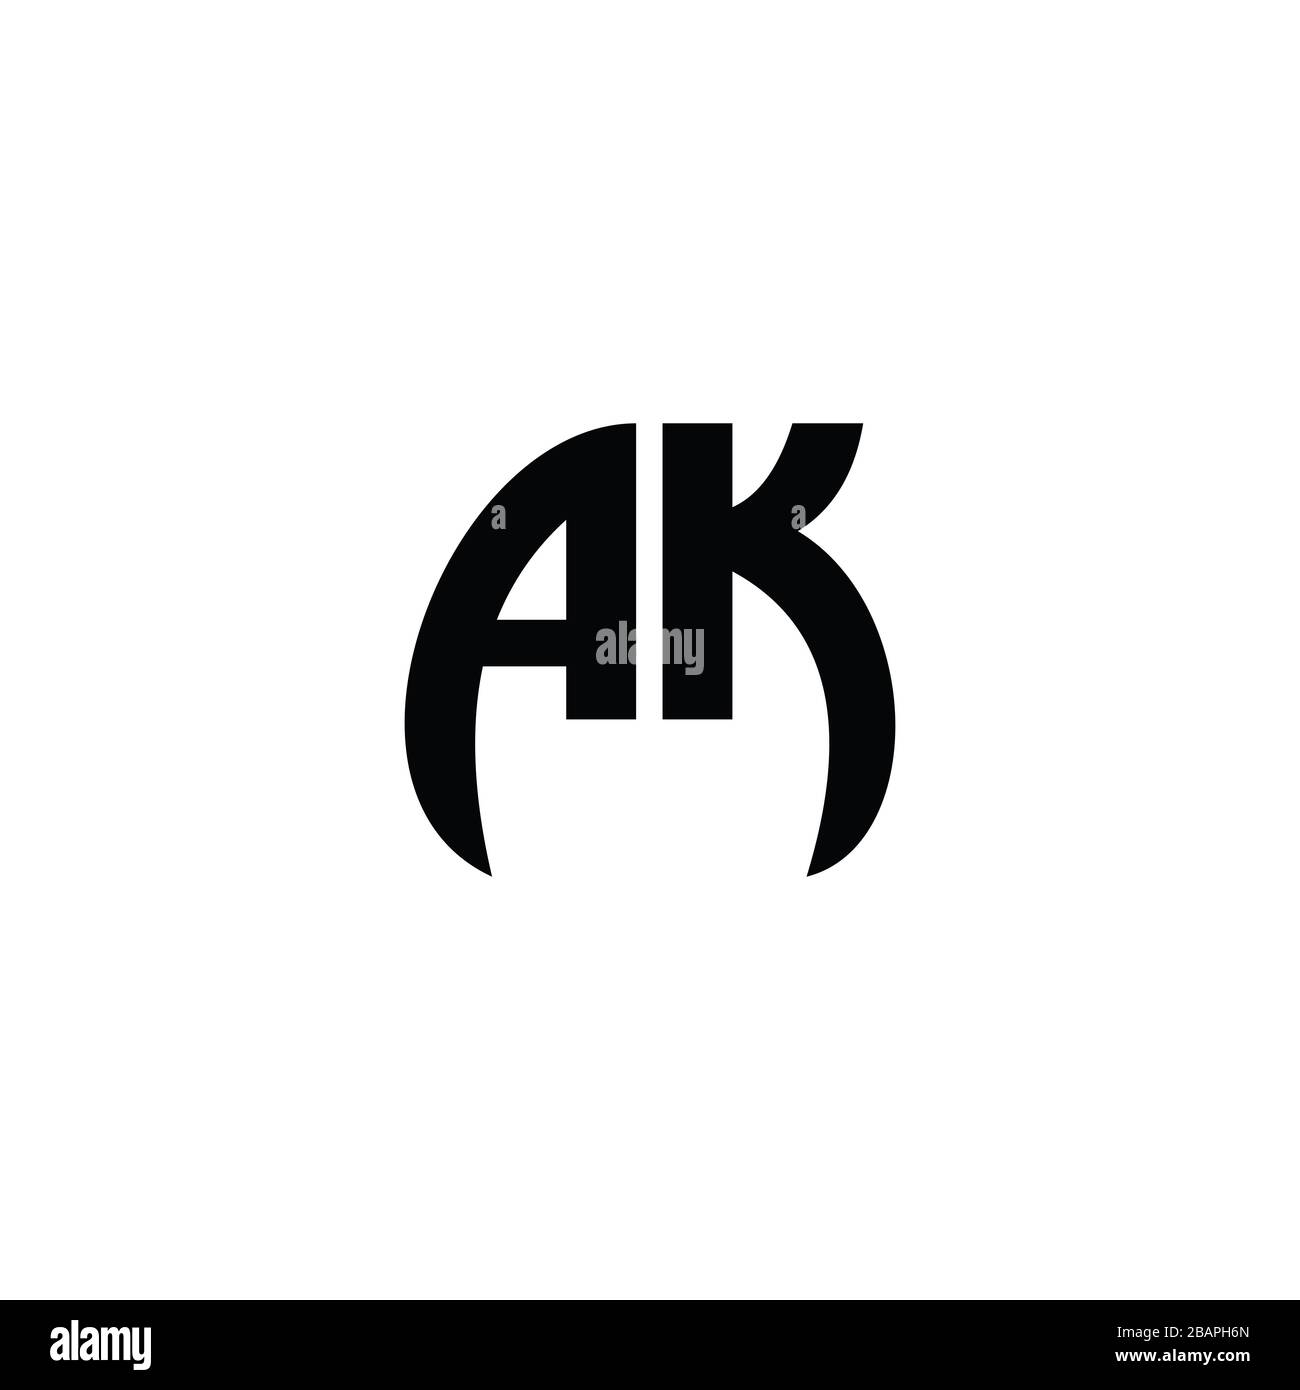 Initial Letter ak logo or ka logo vector design template Stock Vector